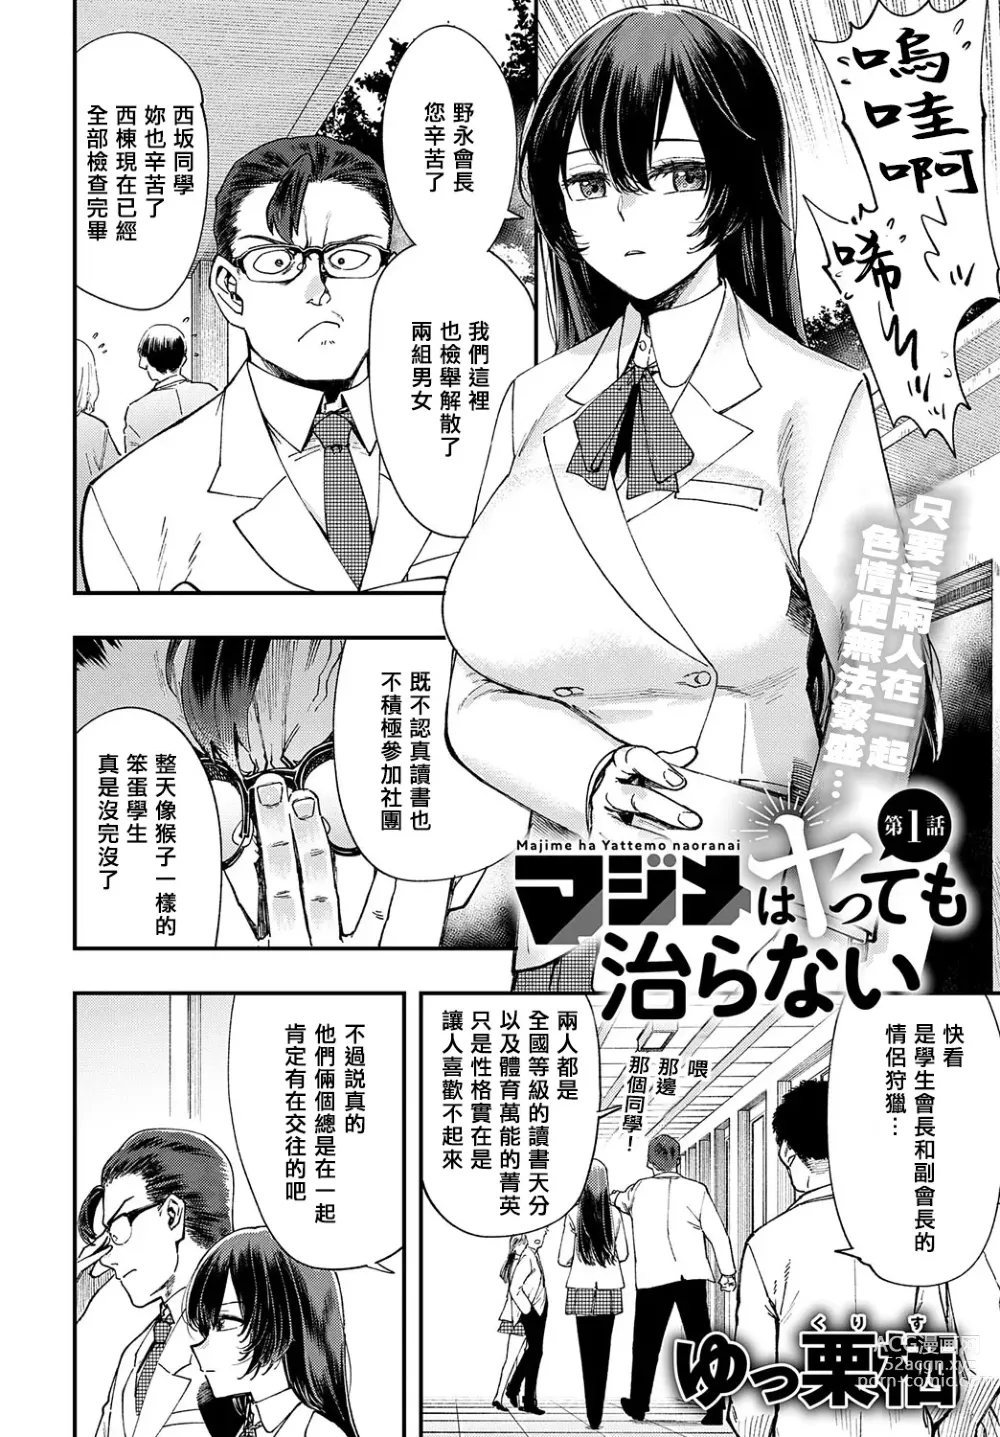 Page 2 of manga Majime wa Yattemo Naoranai Ch. 1